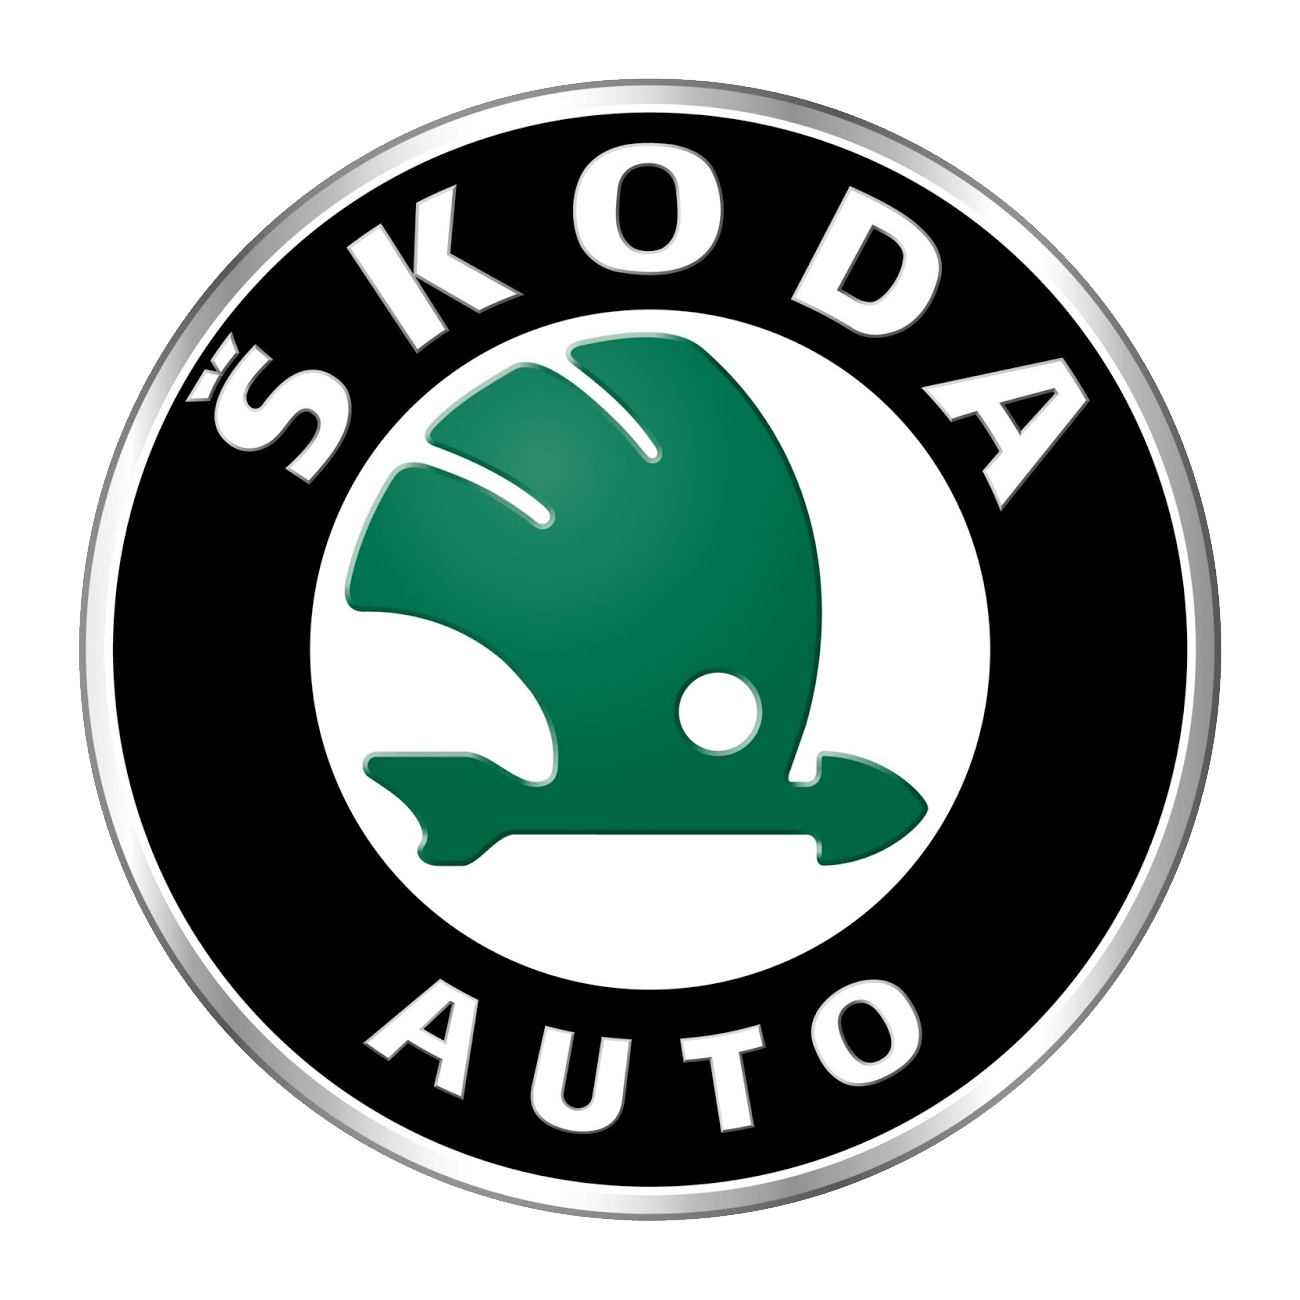 Download Free Png Skoda Logo 